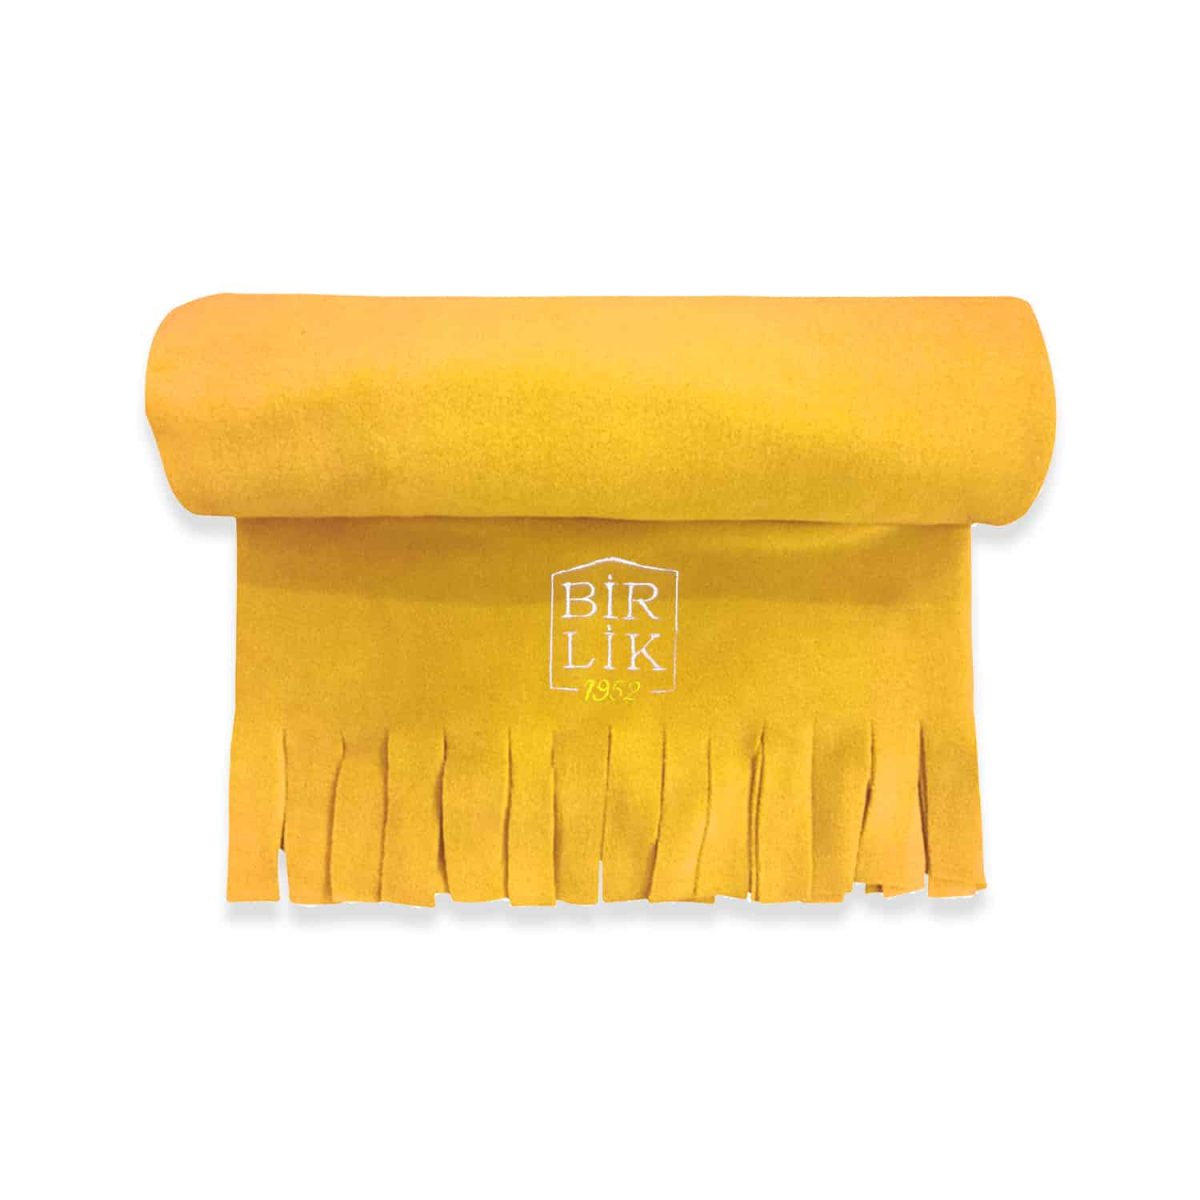 birlik1952 polar şal shawl cafe restaurant pastane restoran otel kafe kurumsal baskılı nakışlı embrodiery art logolu trademark kumaş fabric whosale promotion promosyon yellow sarı